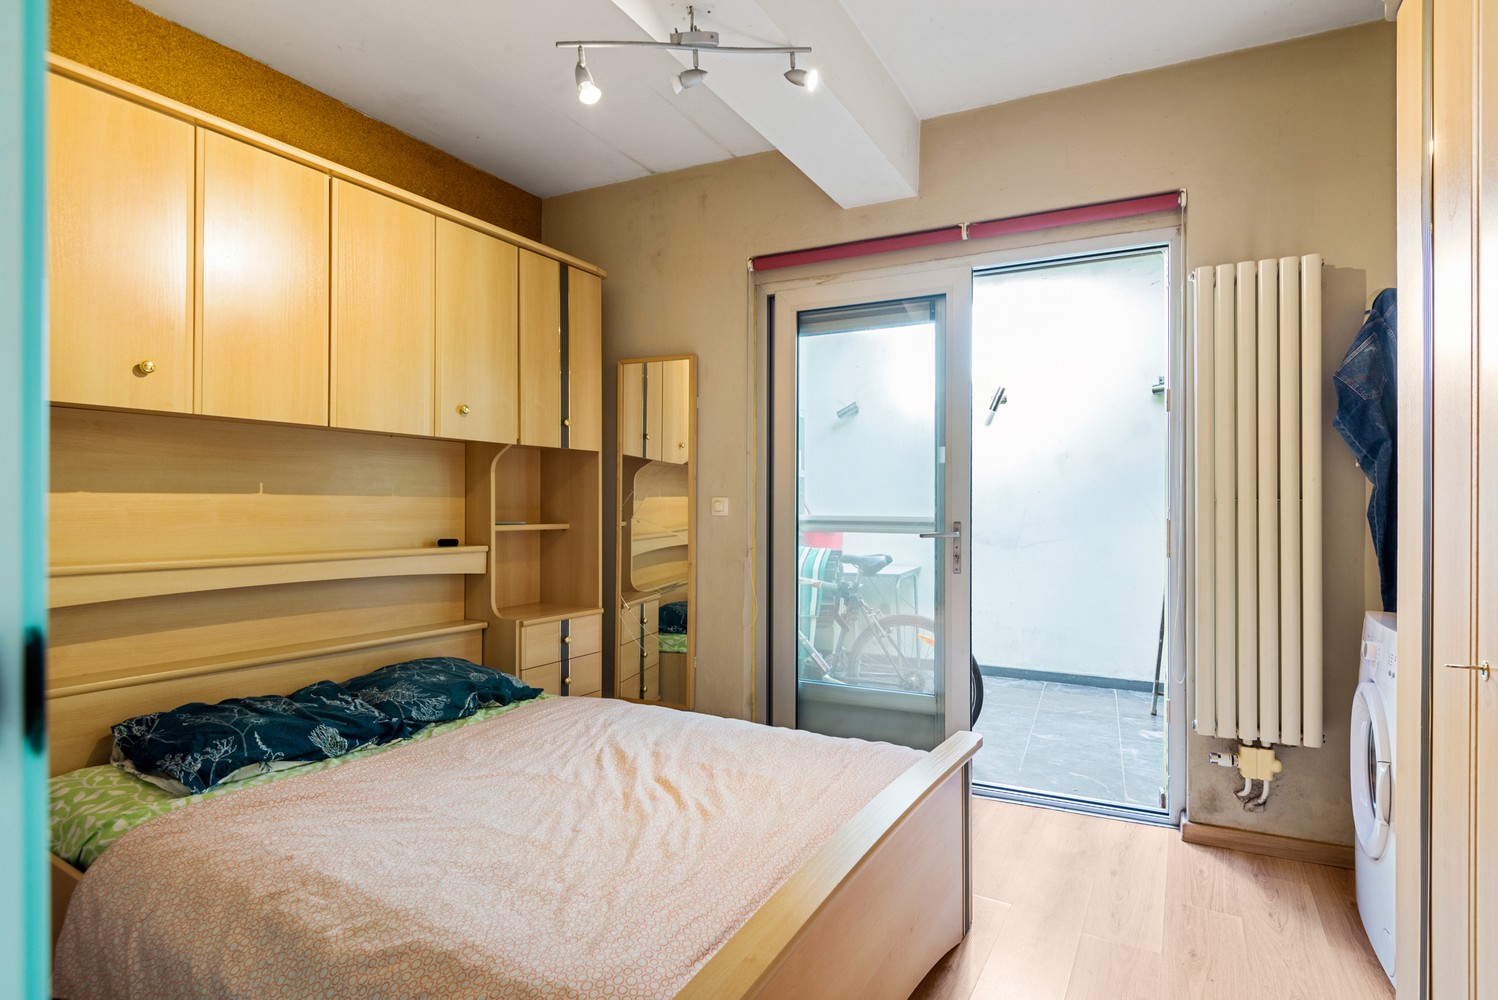 Gelijkvloers appartement met 1 slaapkamer te koop in Mechelen afbeelding 9